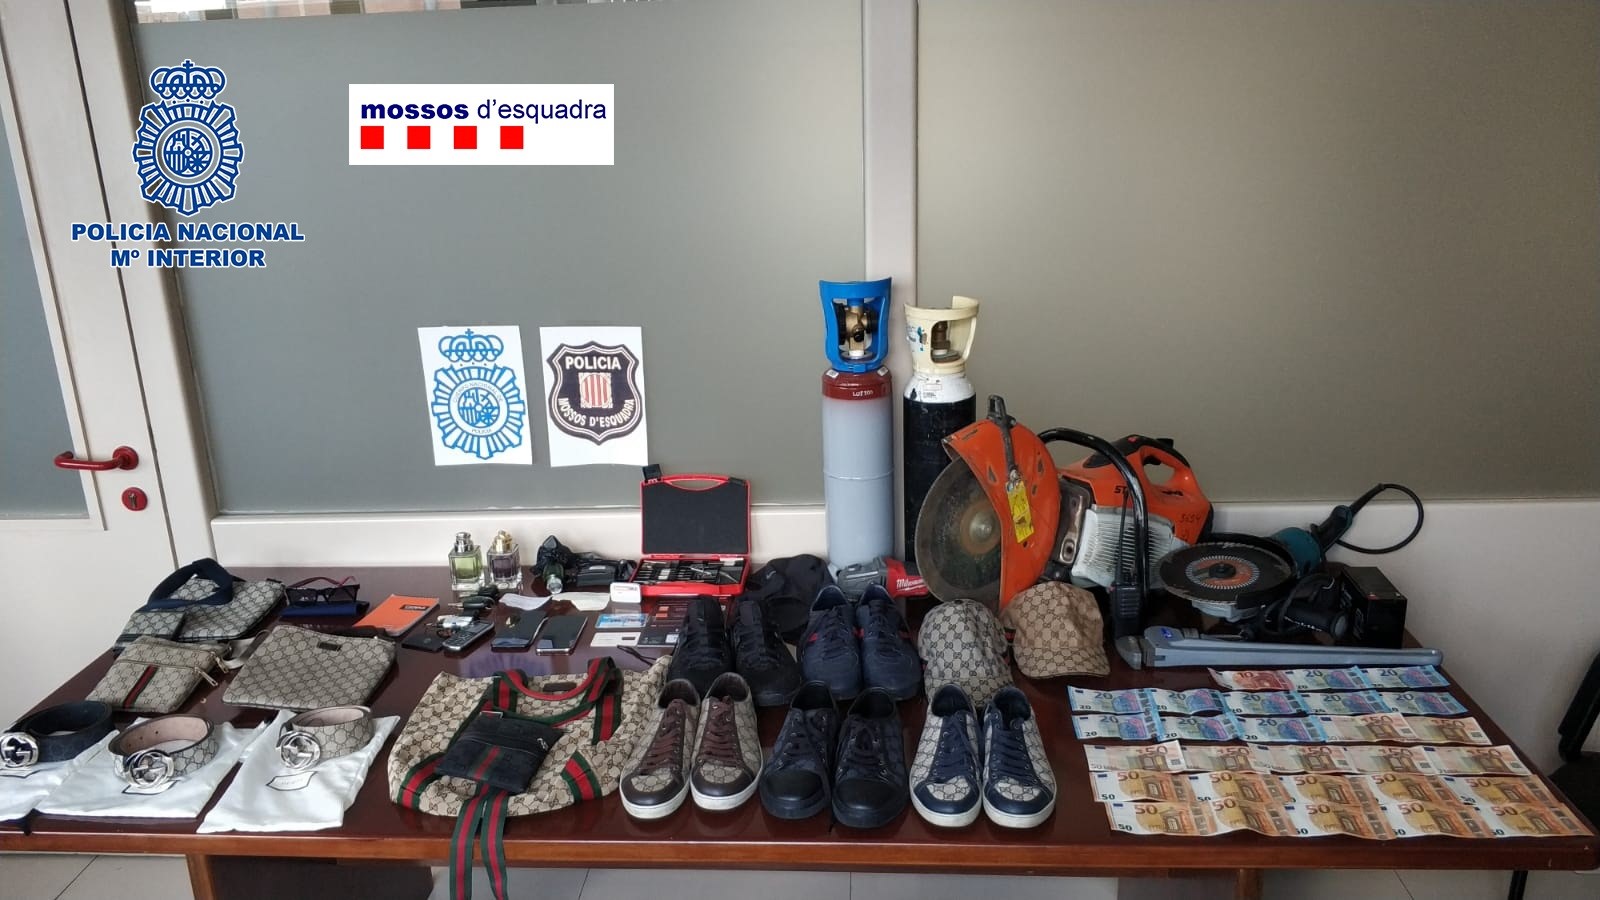 Materiales utilizados por los ladrones en sus robos / Europa Press